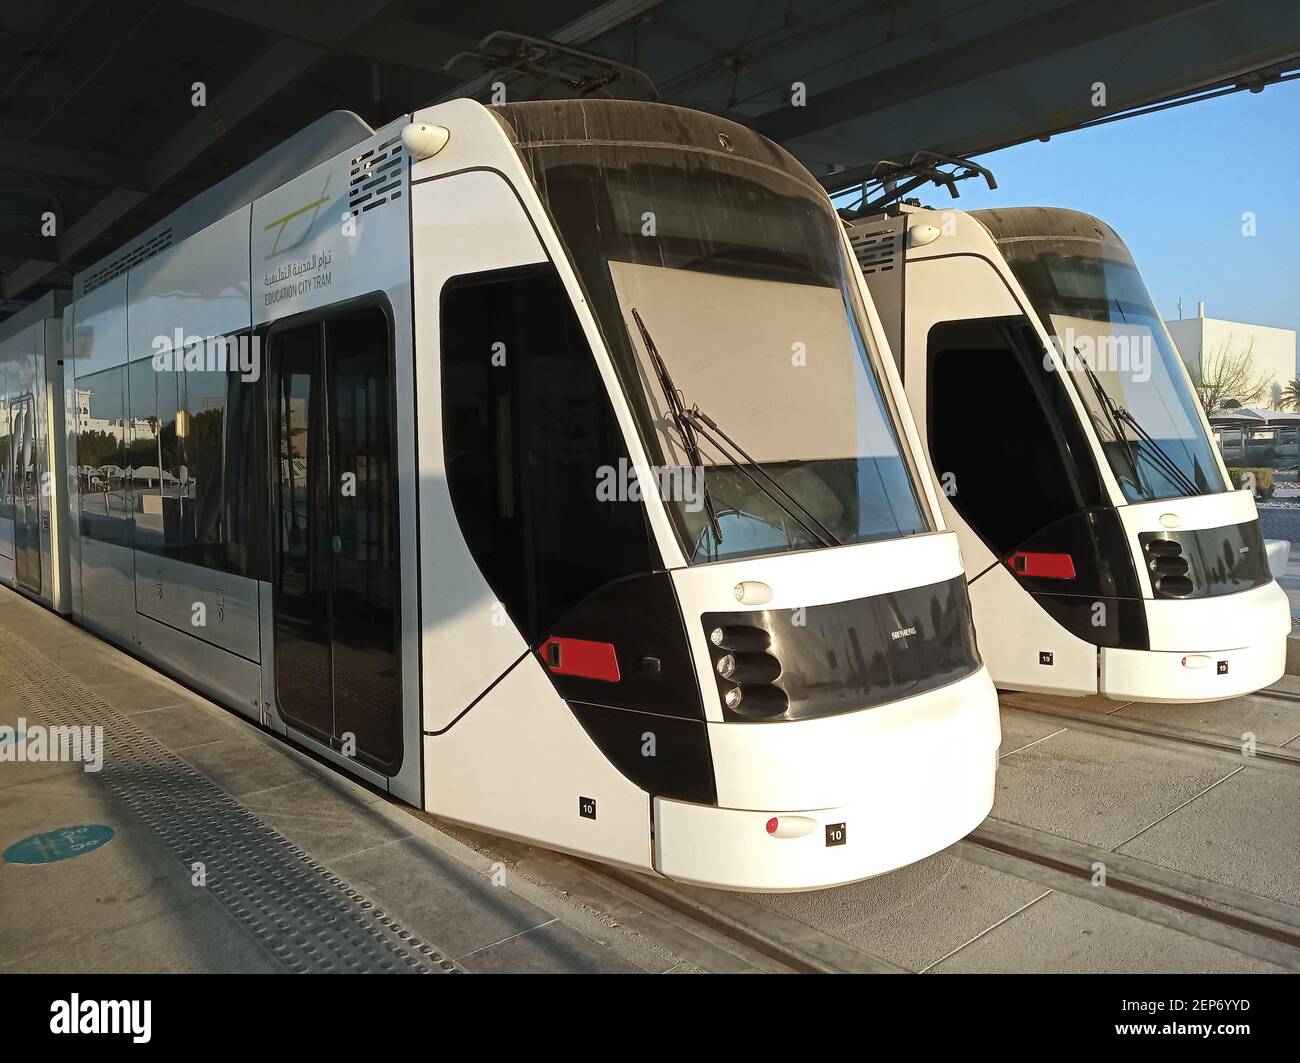 Una vista del tram della città dell'istruzione a Doha, Qatar Foto Stock